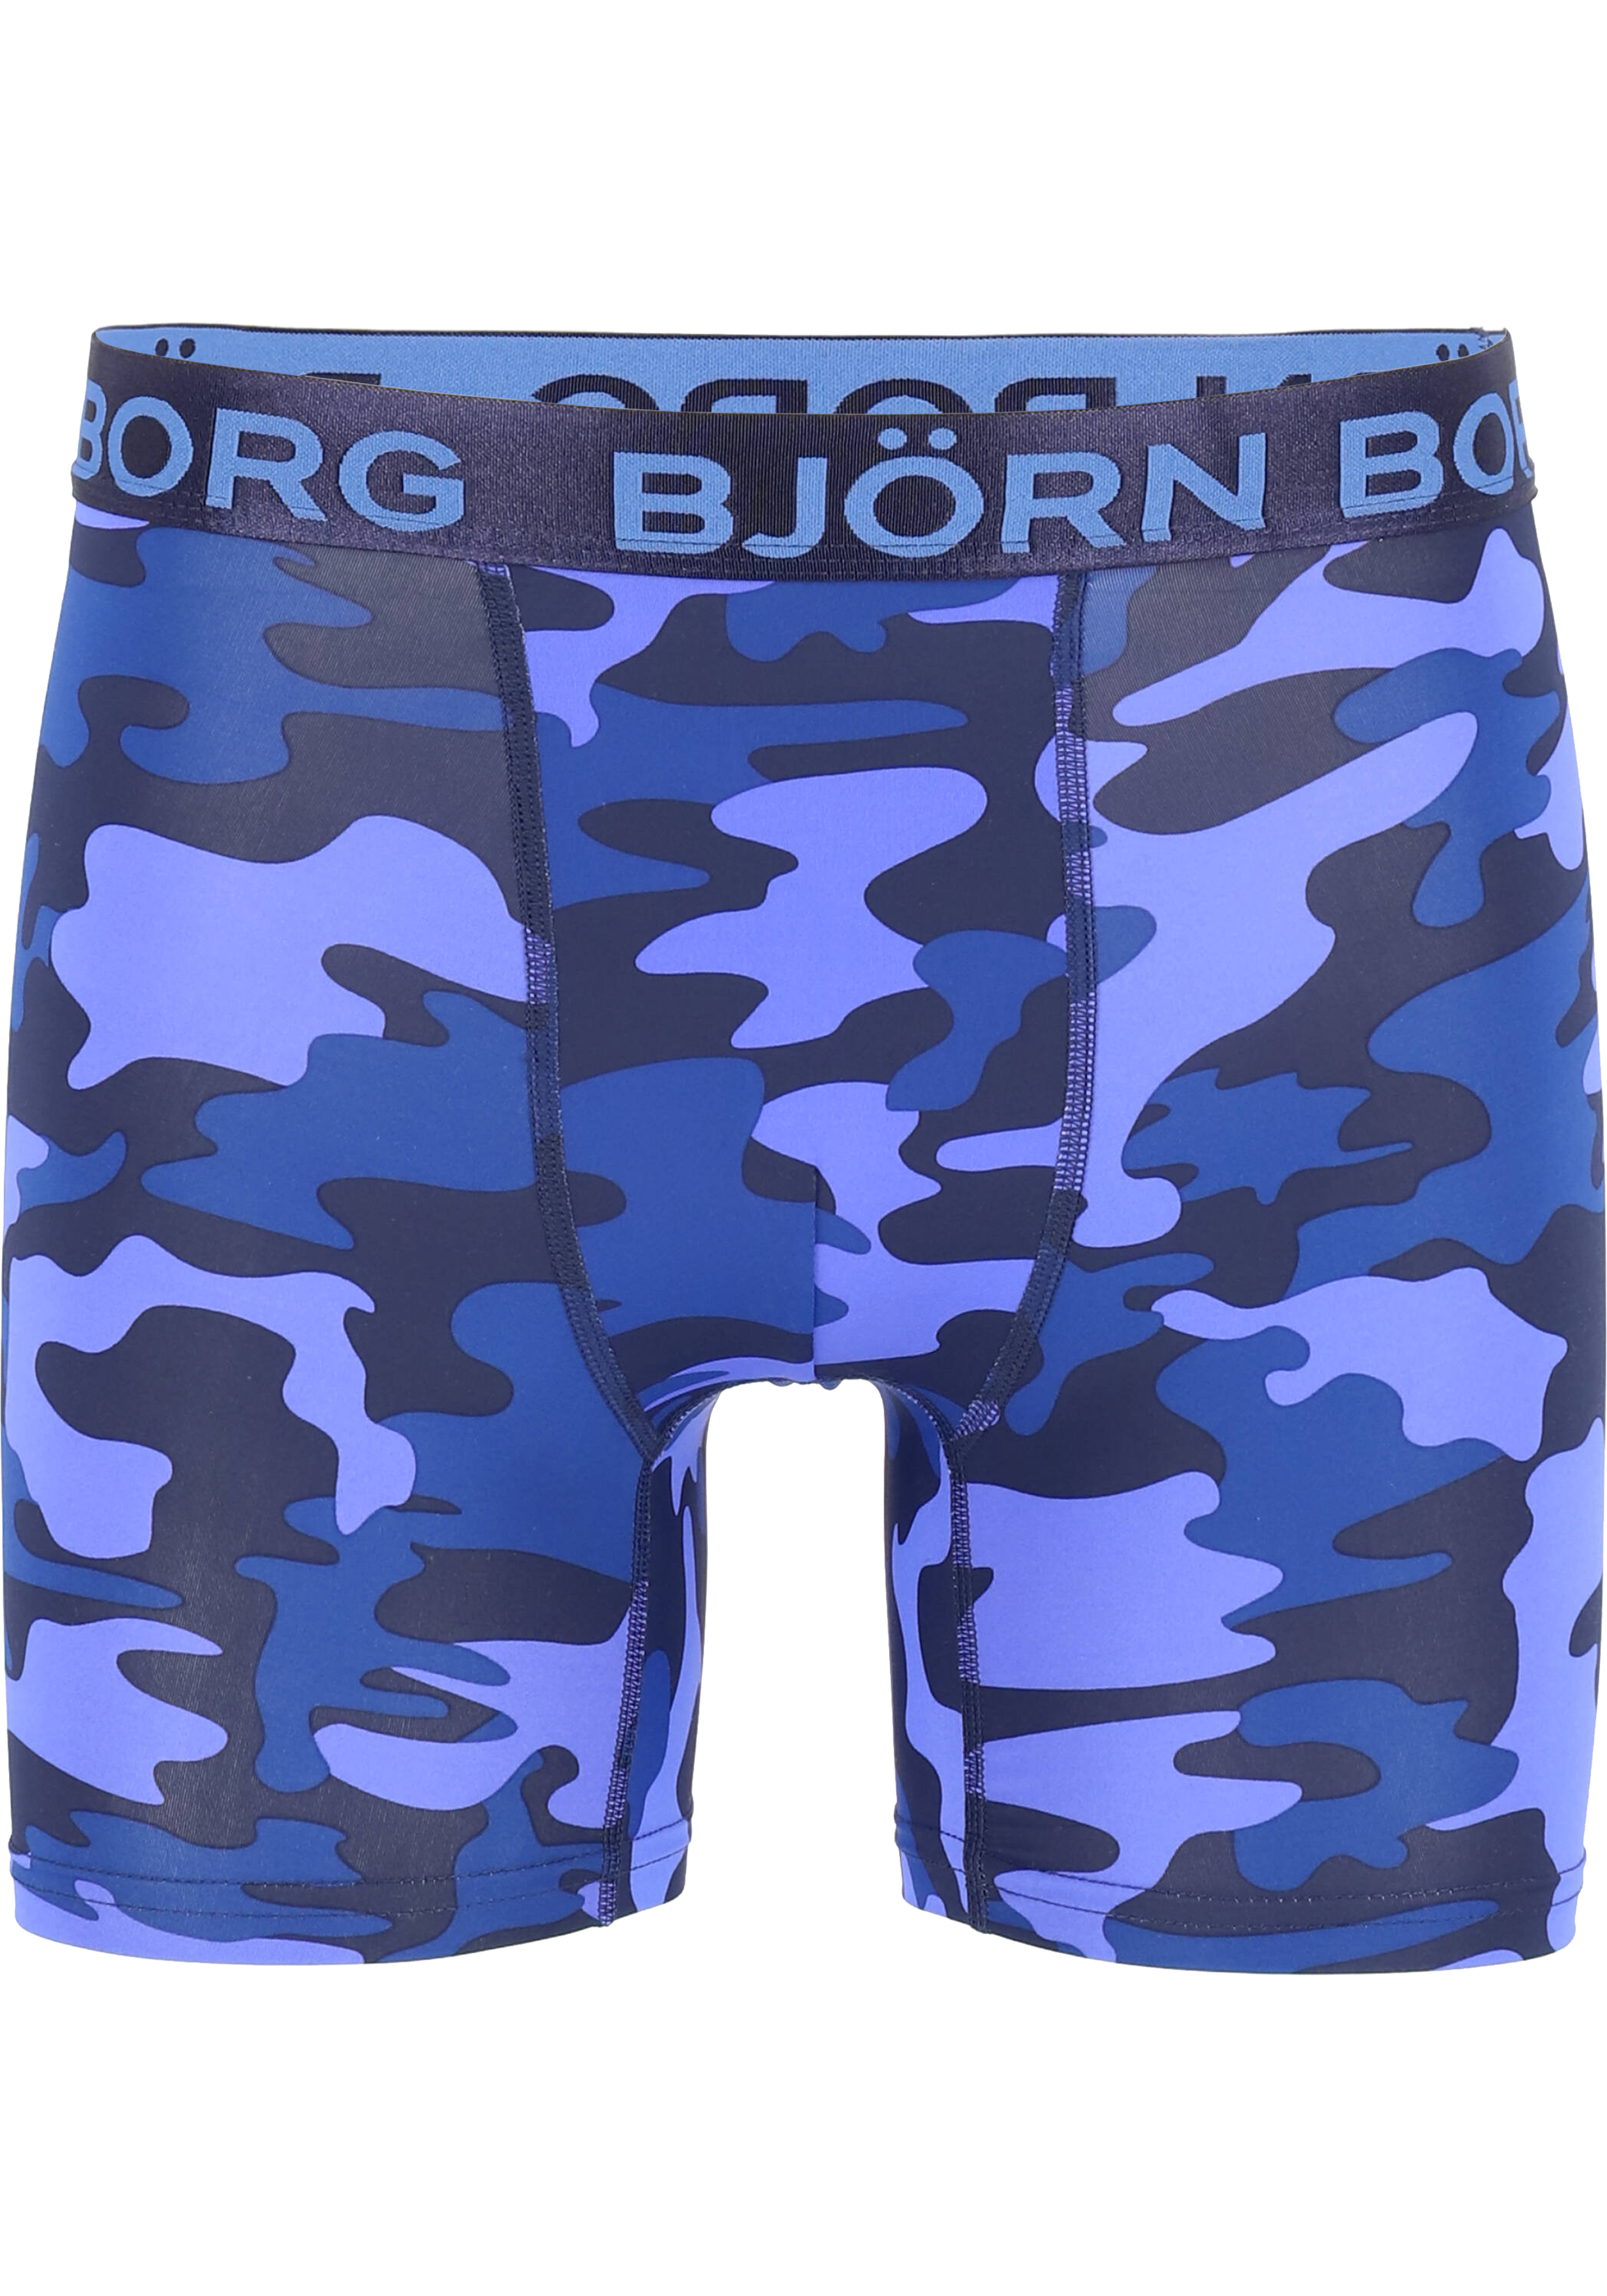 Op de grond ego extract Bjorn Borg Boxers Performance microfiber, blauw camo print - Shop de  nieuwste voorjaarsmode